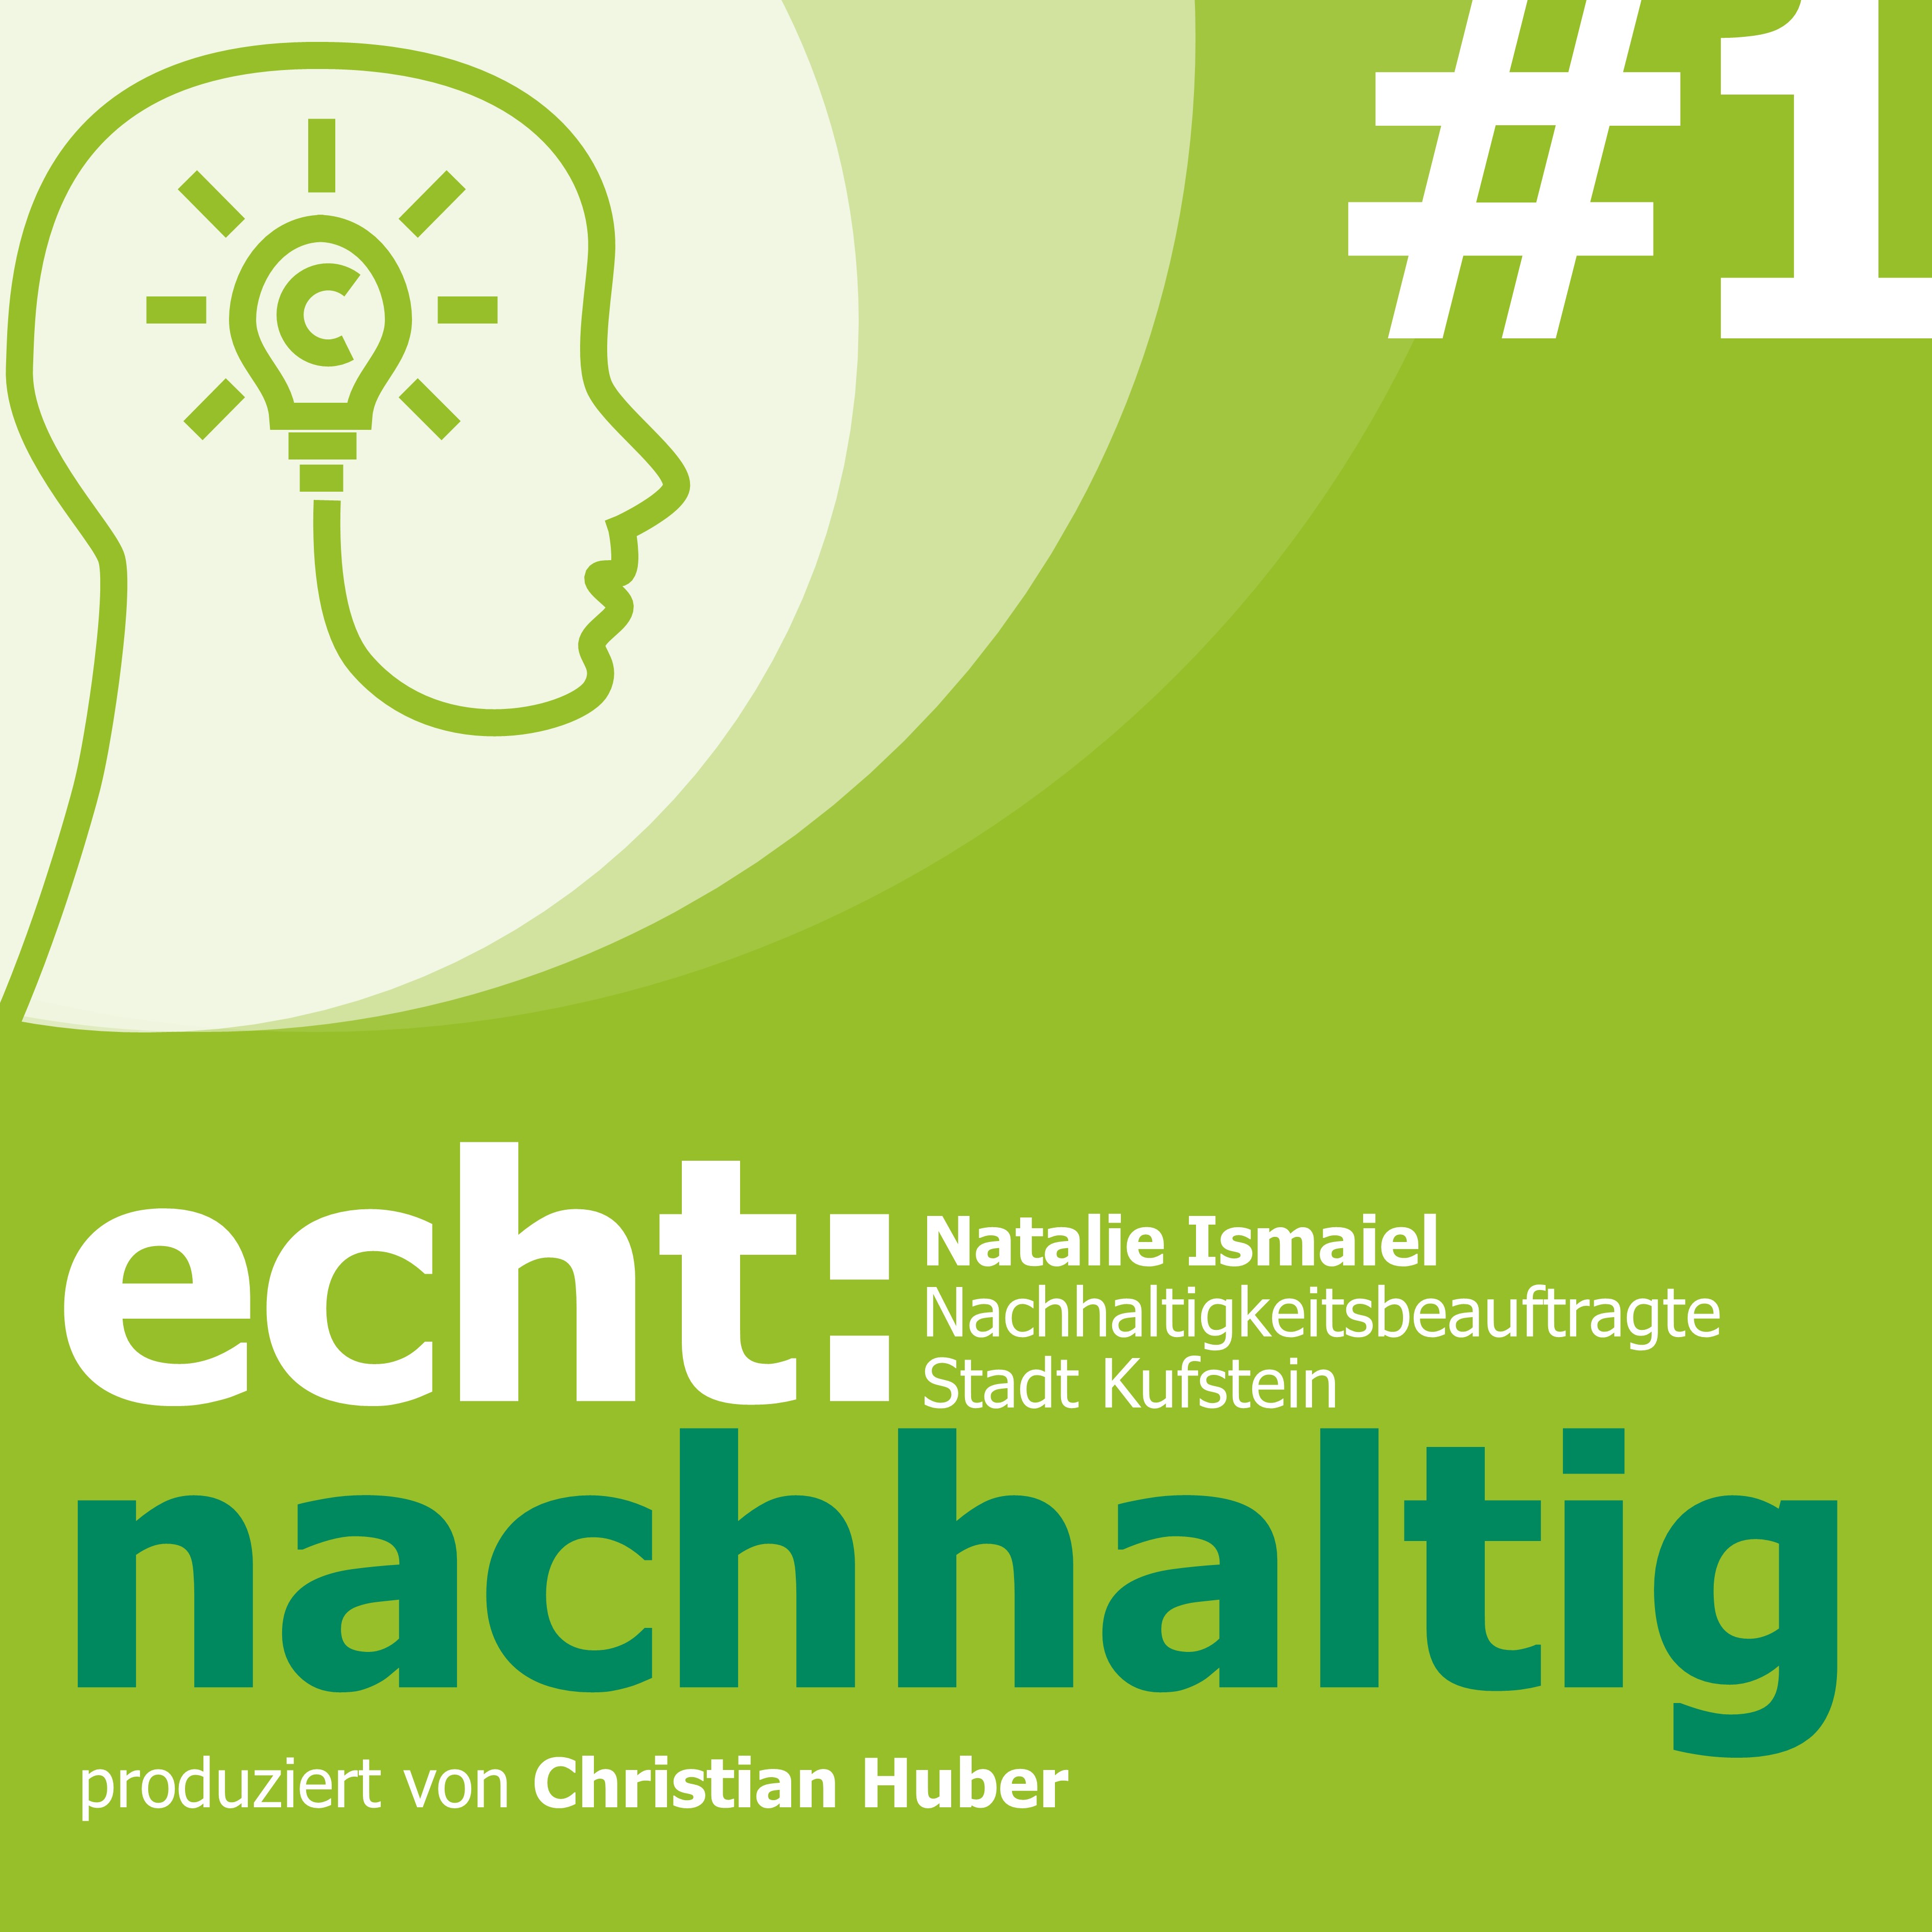 Episode 1 - Beruf Nachhaltigkeitsbeauftragte. Christian Huber im Gespräch mit Natalie Ismaiel